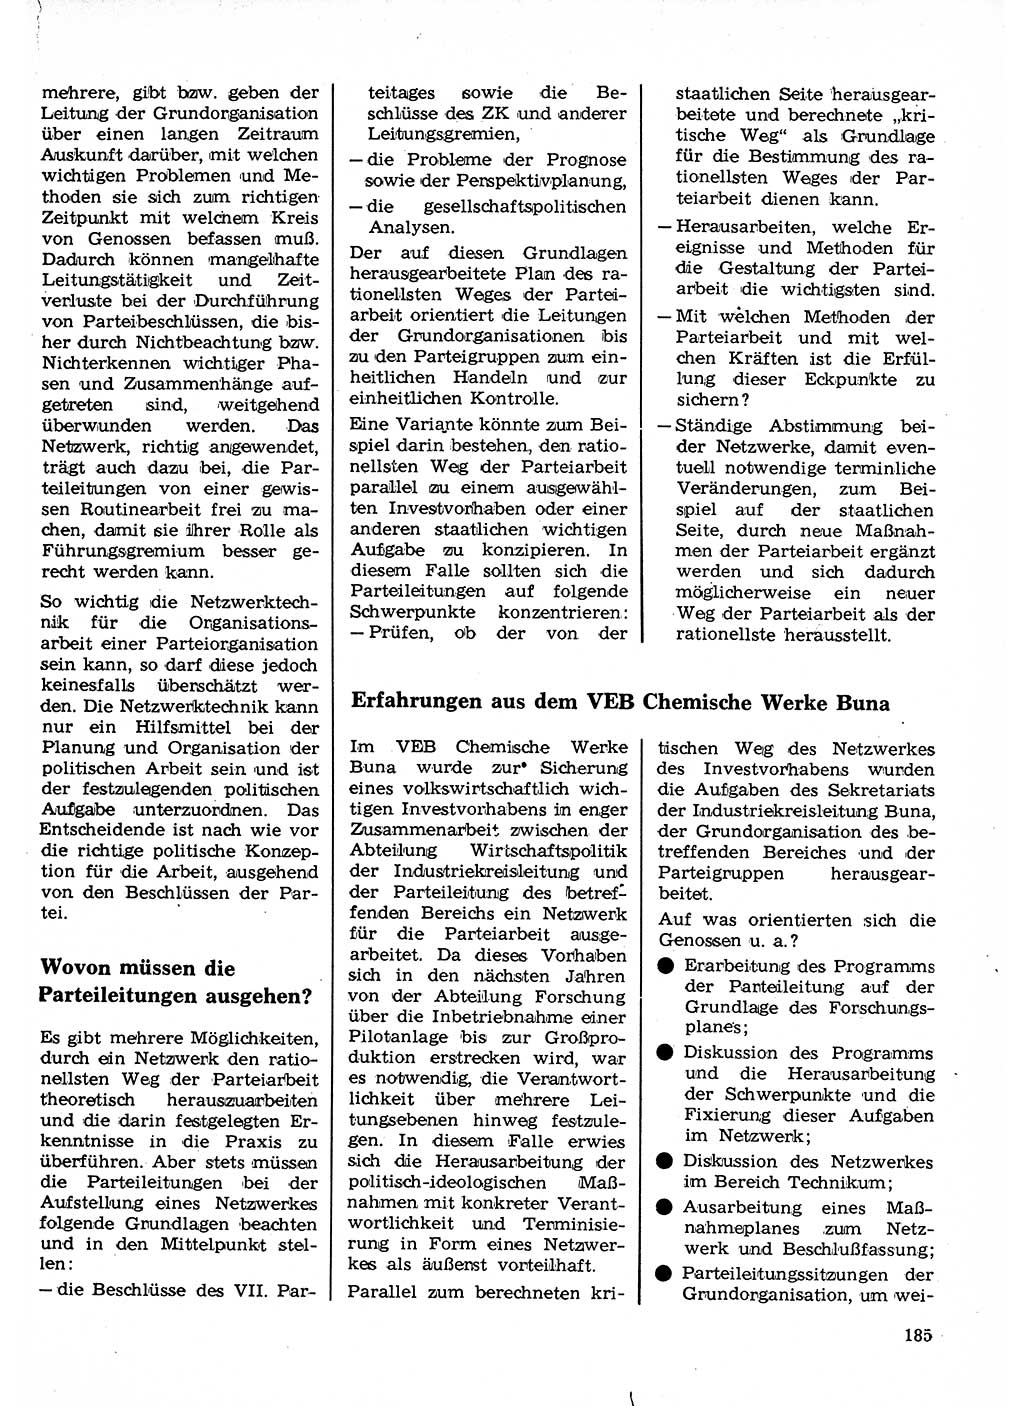 Neuer Weg (NW), Organ des Zentralkomitees (ZK) der SED (Sozialistische Einheitspartei Deutschlands) für Fragen des Parteilebens, 23. Jahrgang [Deutsche Demokratische Republik (DDR)] 1968, Seite 185 (NW ZK SED DDR 1968, S. 185)